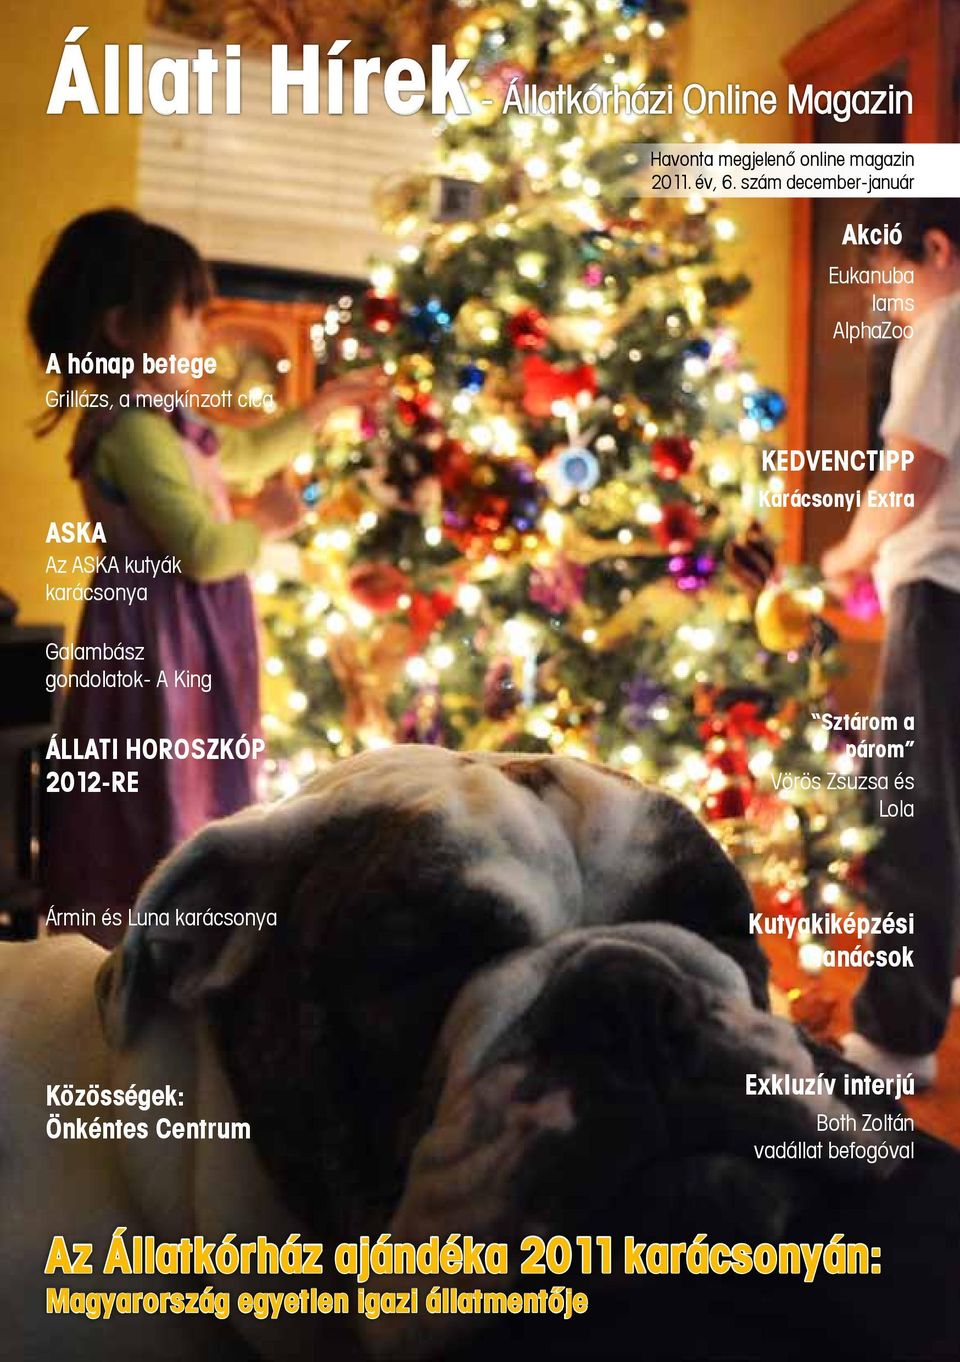 Karácsonyi Extra Galambász gondolatok- A King Állati Horoszkóp 2012-re Sztárom a párom Vörös Zsuzsa és Lola Ármin és Luna karácsonya